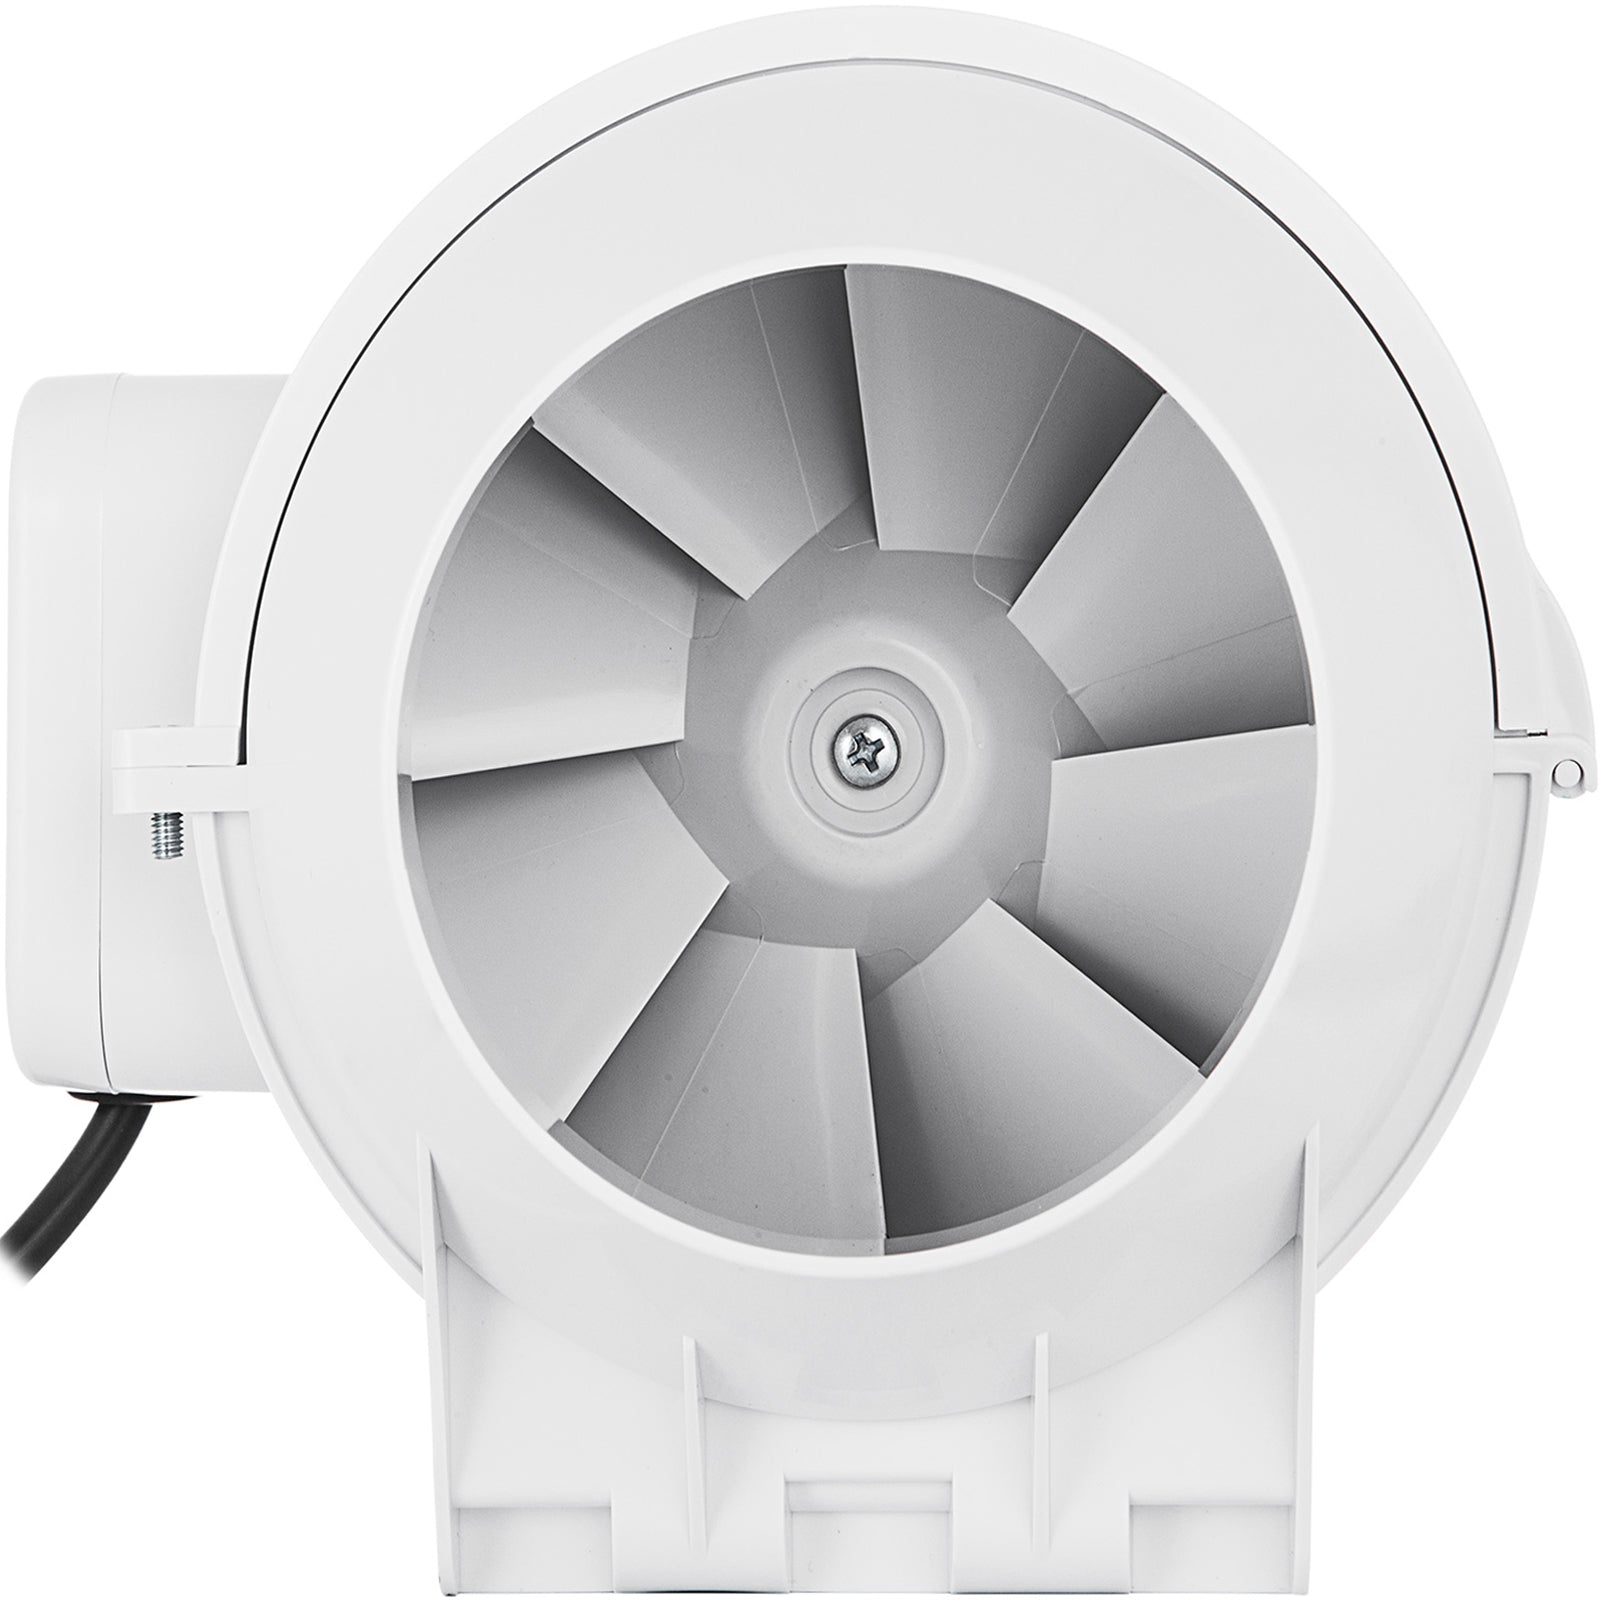 4in Duct Mixed Flow Inline Fan Bathroom Exhaust Vent Fan